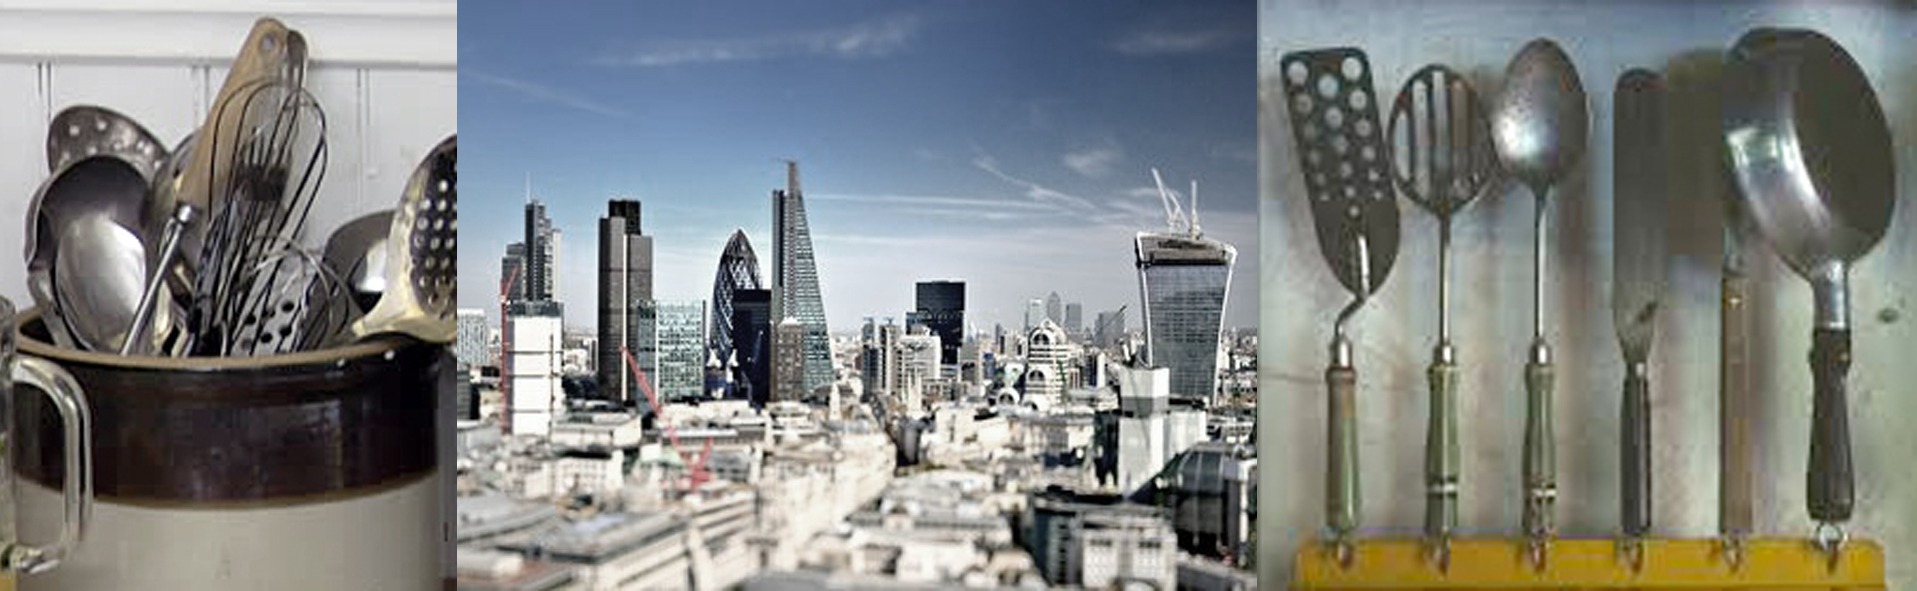 London-skyline-011